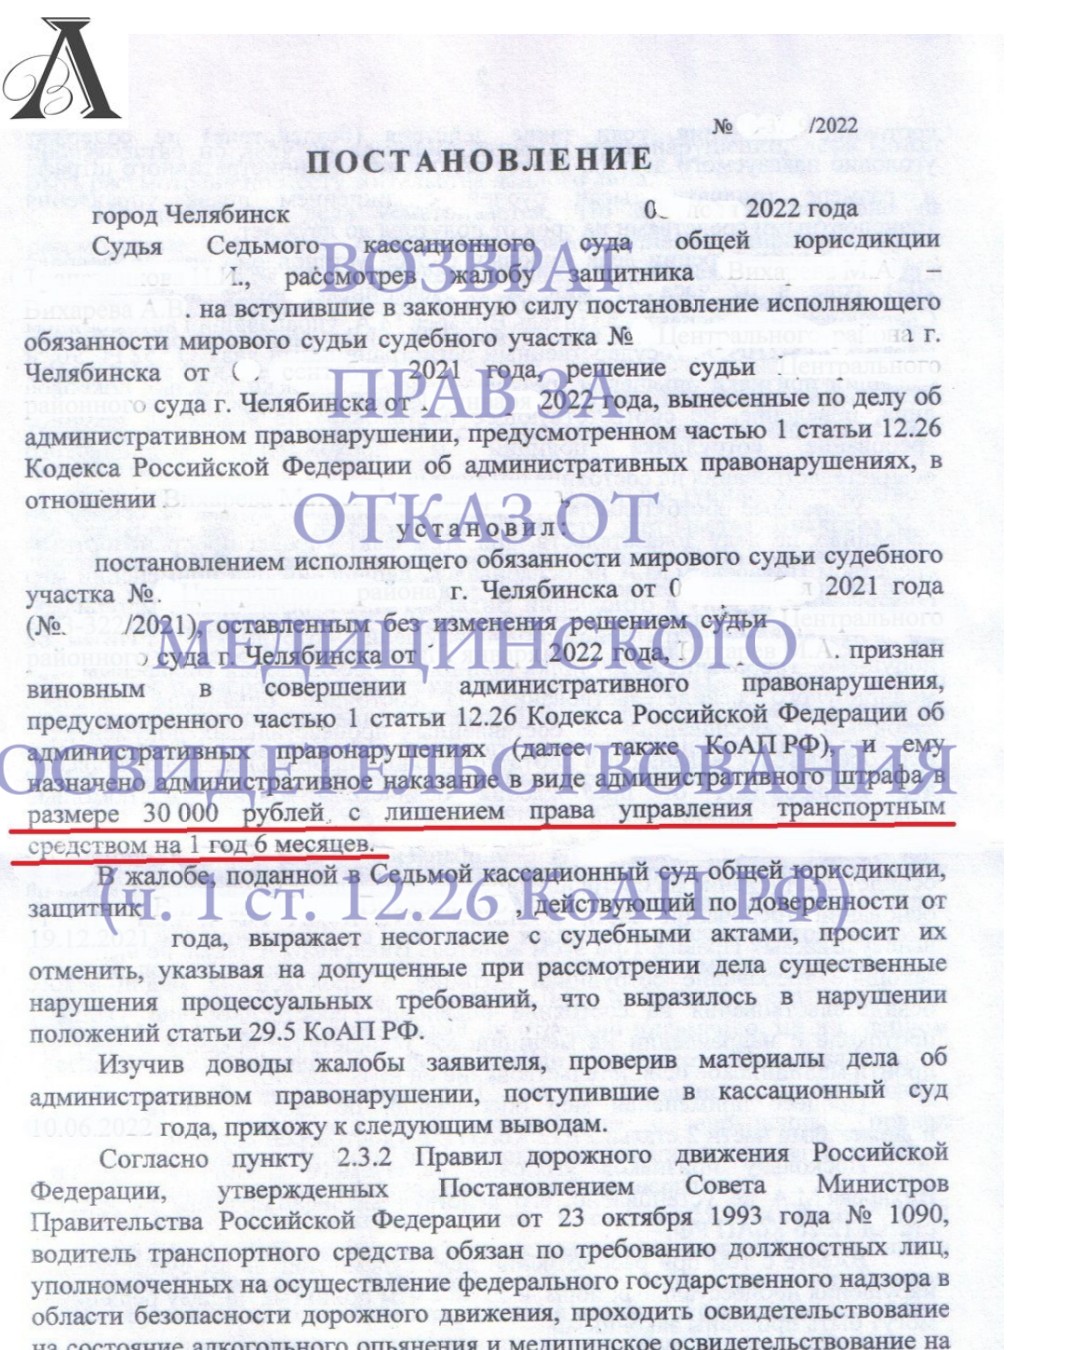 Вернули права за отказ от прохождения медицинского освидетельствования (ч.1 ст. 12.26 КоАП  РФ)